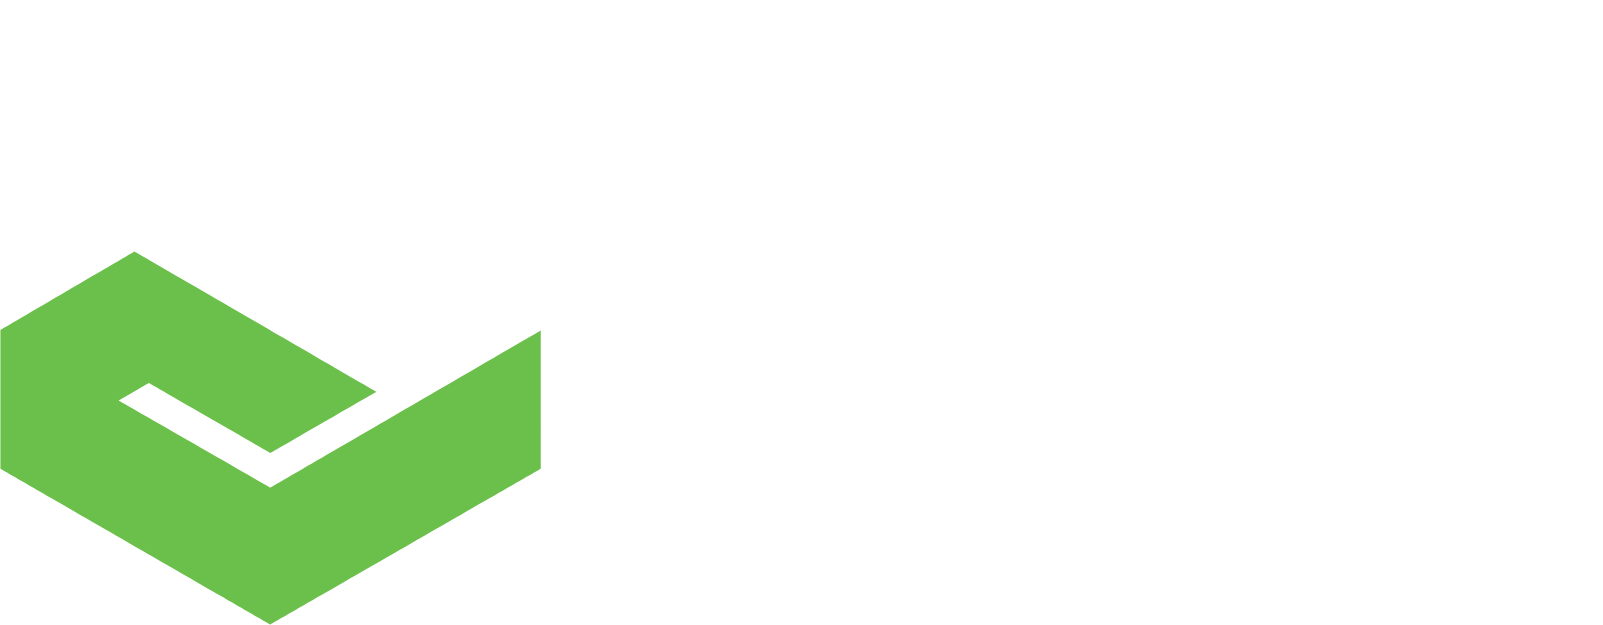 PTC logo grand pour les fonds sombres (PNG transparent)